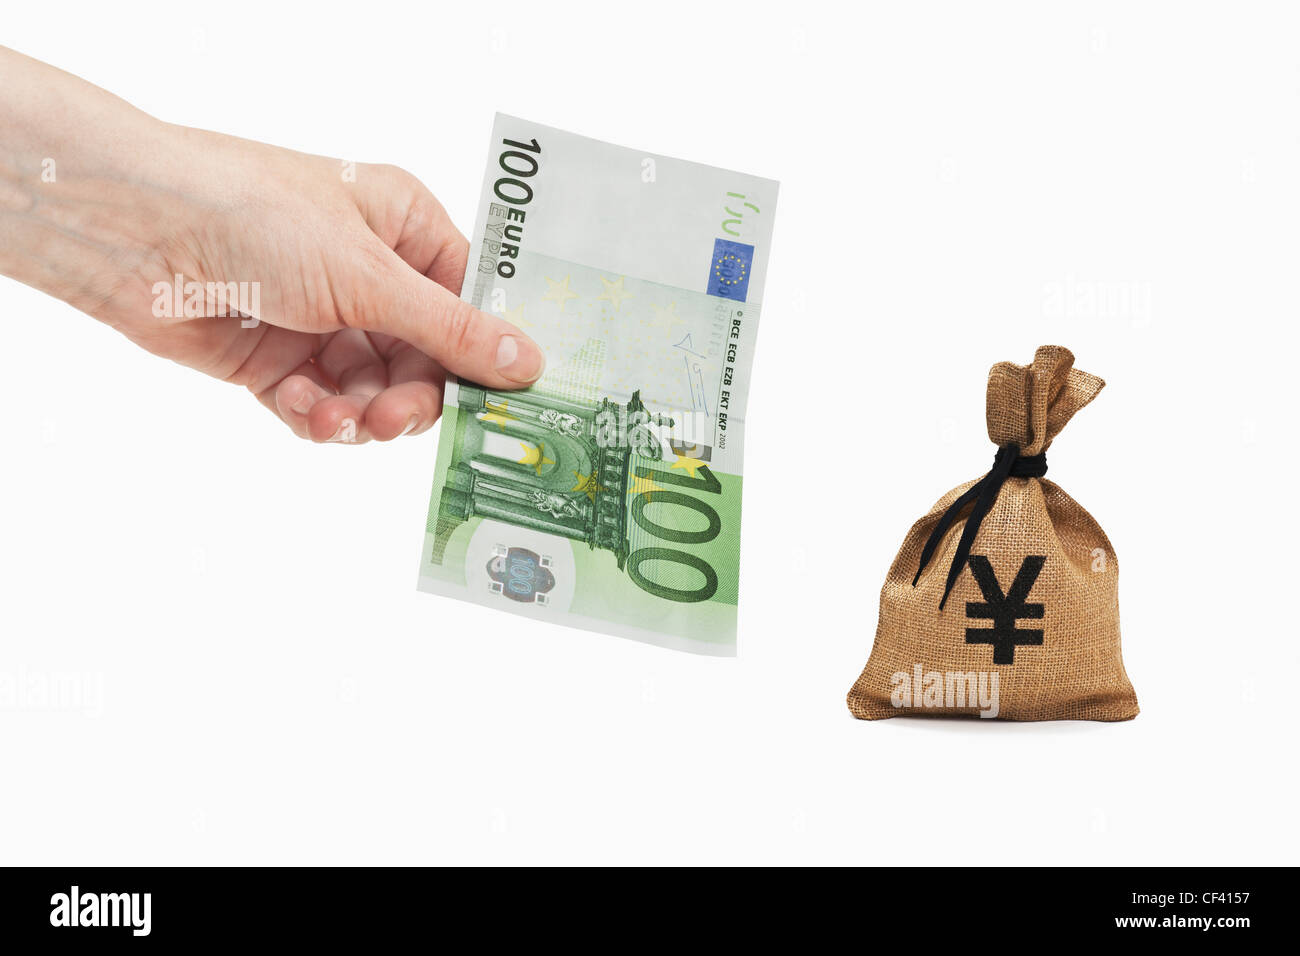 Ein 100 Euro-Schein ist in der Hand gehalten. In der Nähe ist ein Geldbeutel mit einem japanischen Yen Währungszeichen. Stockfoto